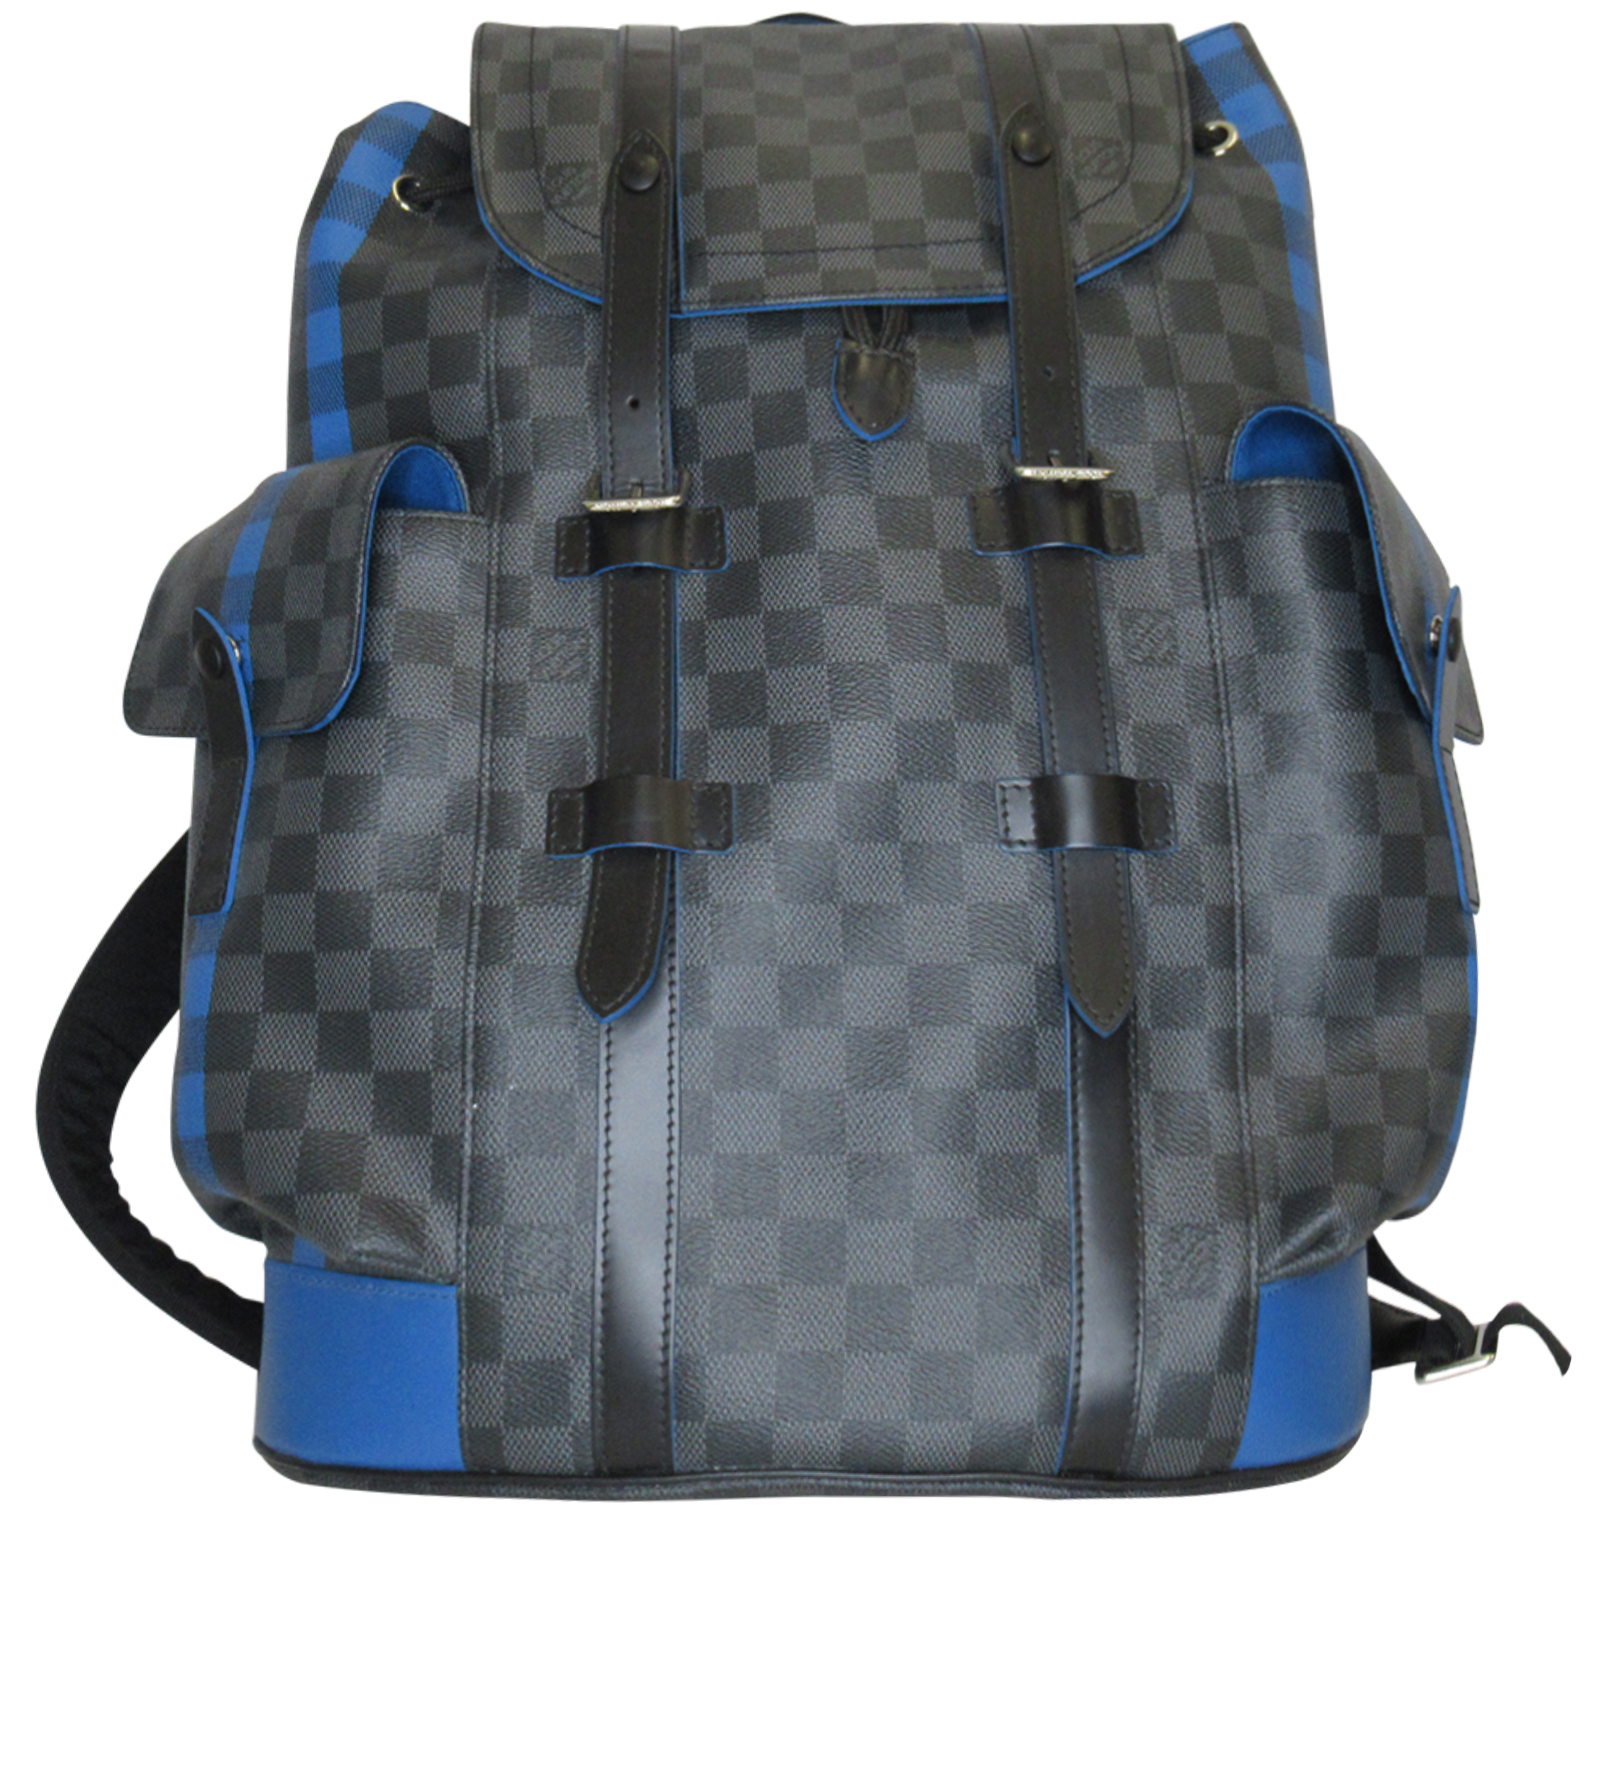 Exclusiva mochila para hombres Christopher de $81.500 por Louis Vuitton -  Mega Ricos